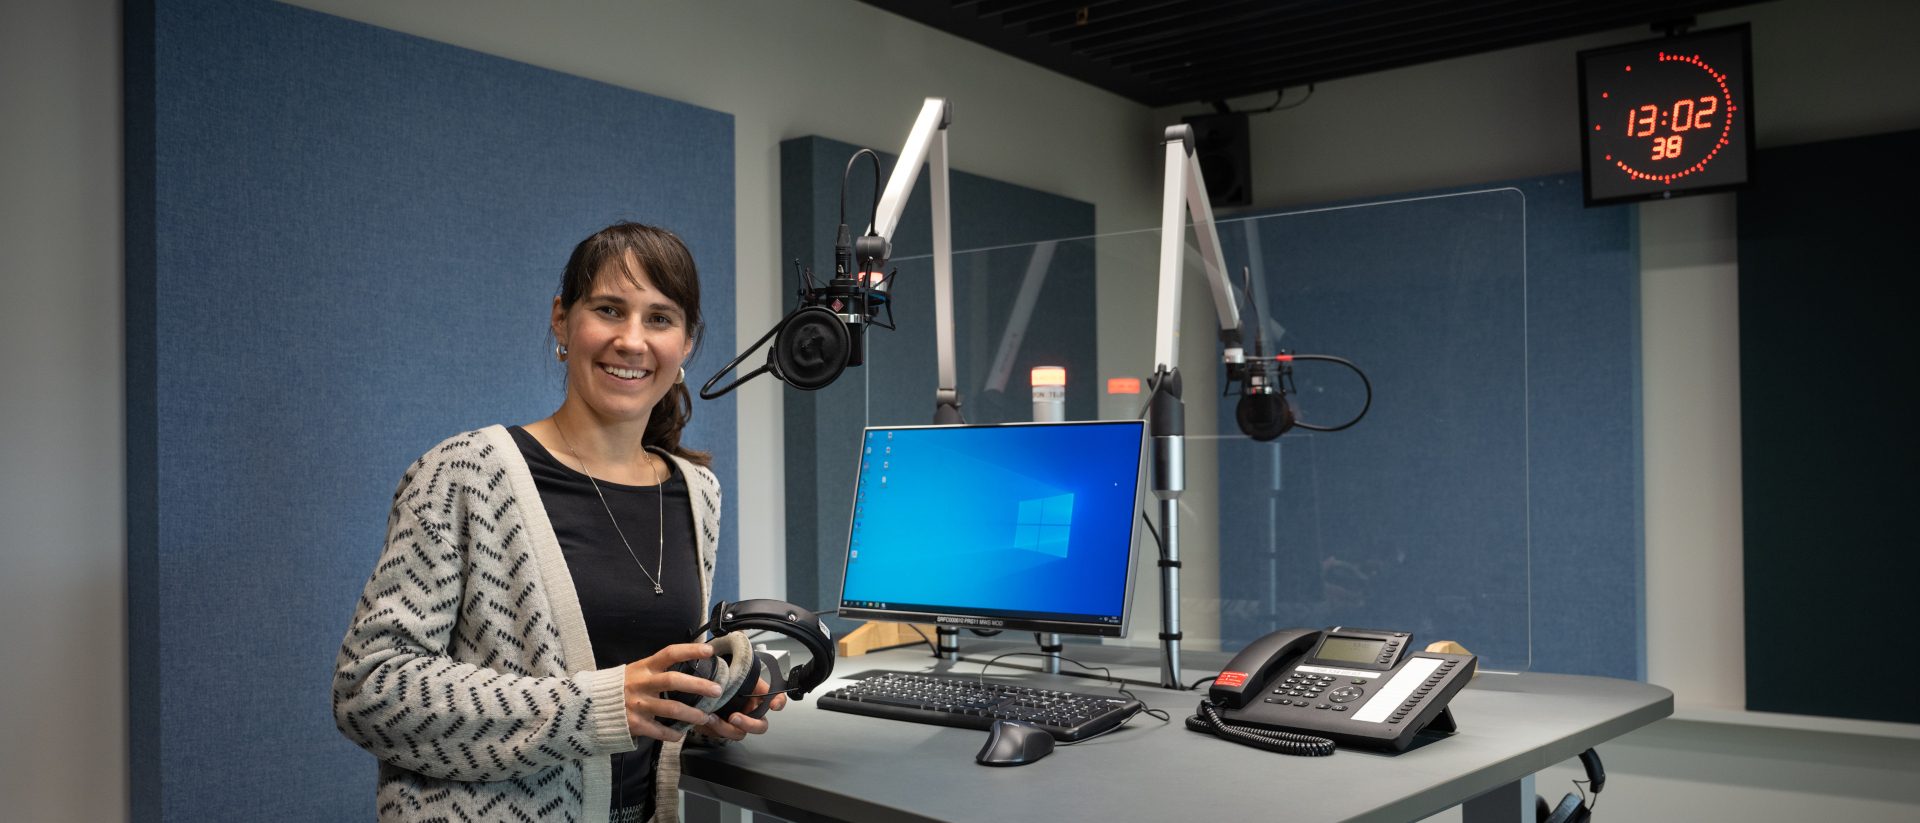 Andrea Meier ist neue Radiopredigerin.